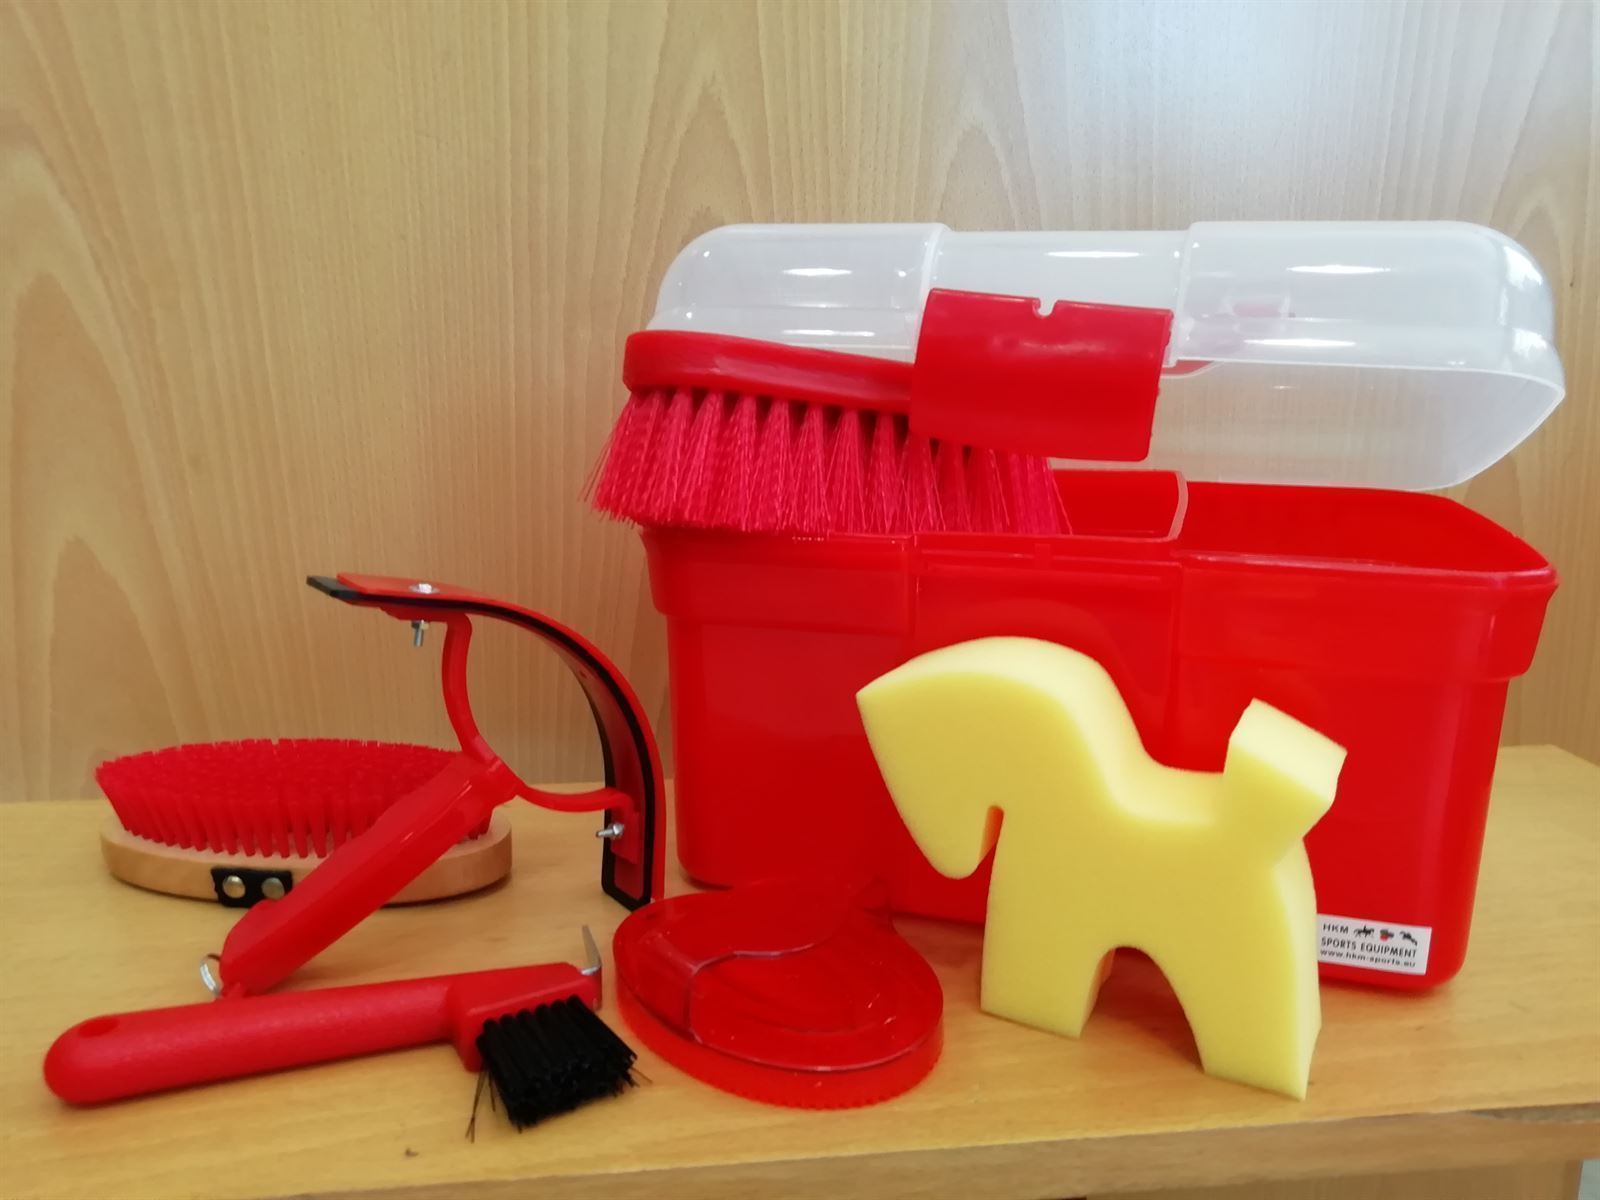 Caja útiles de limpieza HKM Sports Equipment, color rojo - Imagen 1